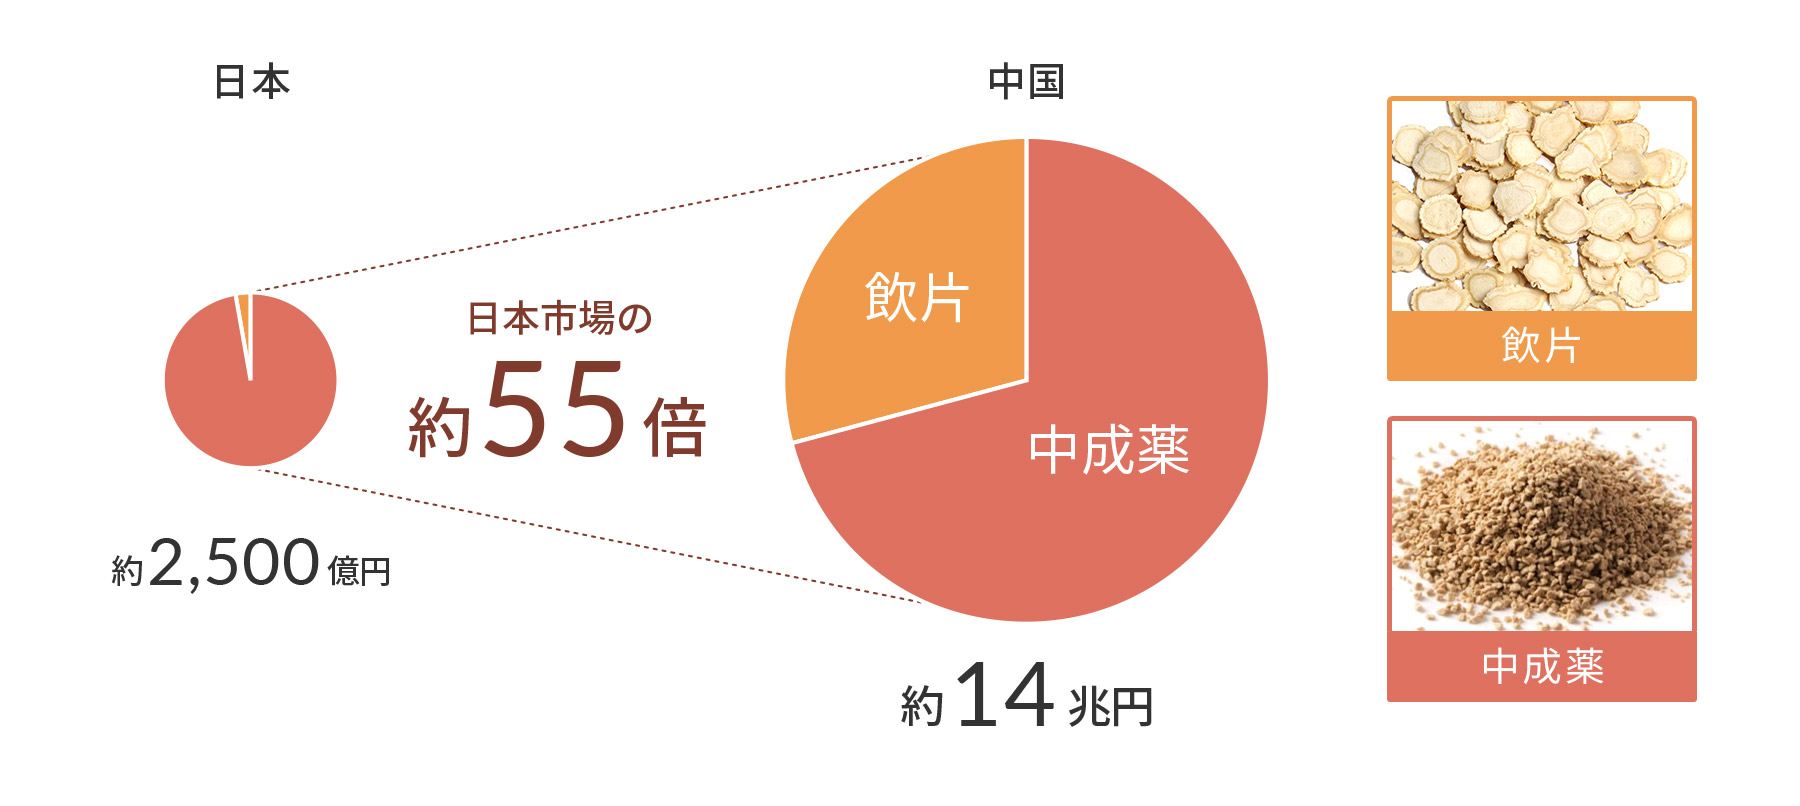 日本と中国における飲片と中成薬の割合比較